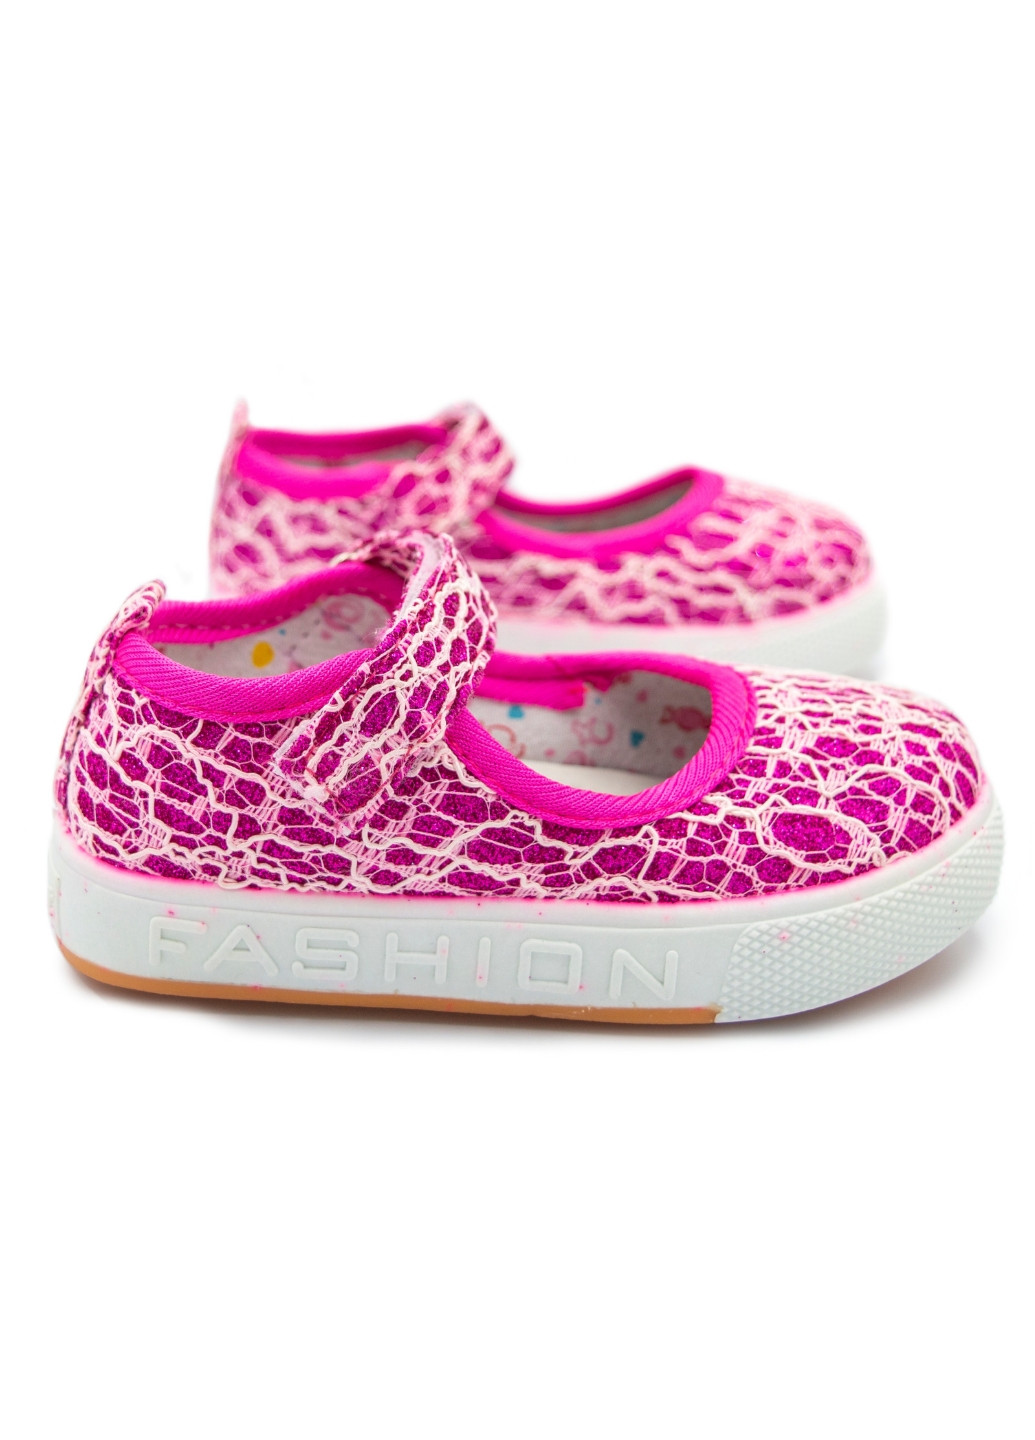 Текстильні тапочки для дівчинки, капці, туфлі, ТМ С. Луч рожевий святковий